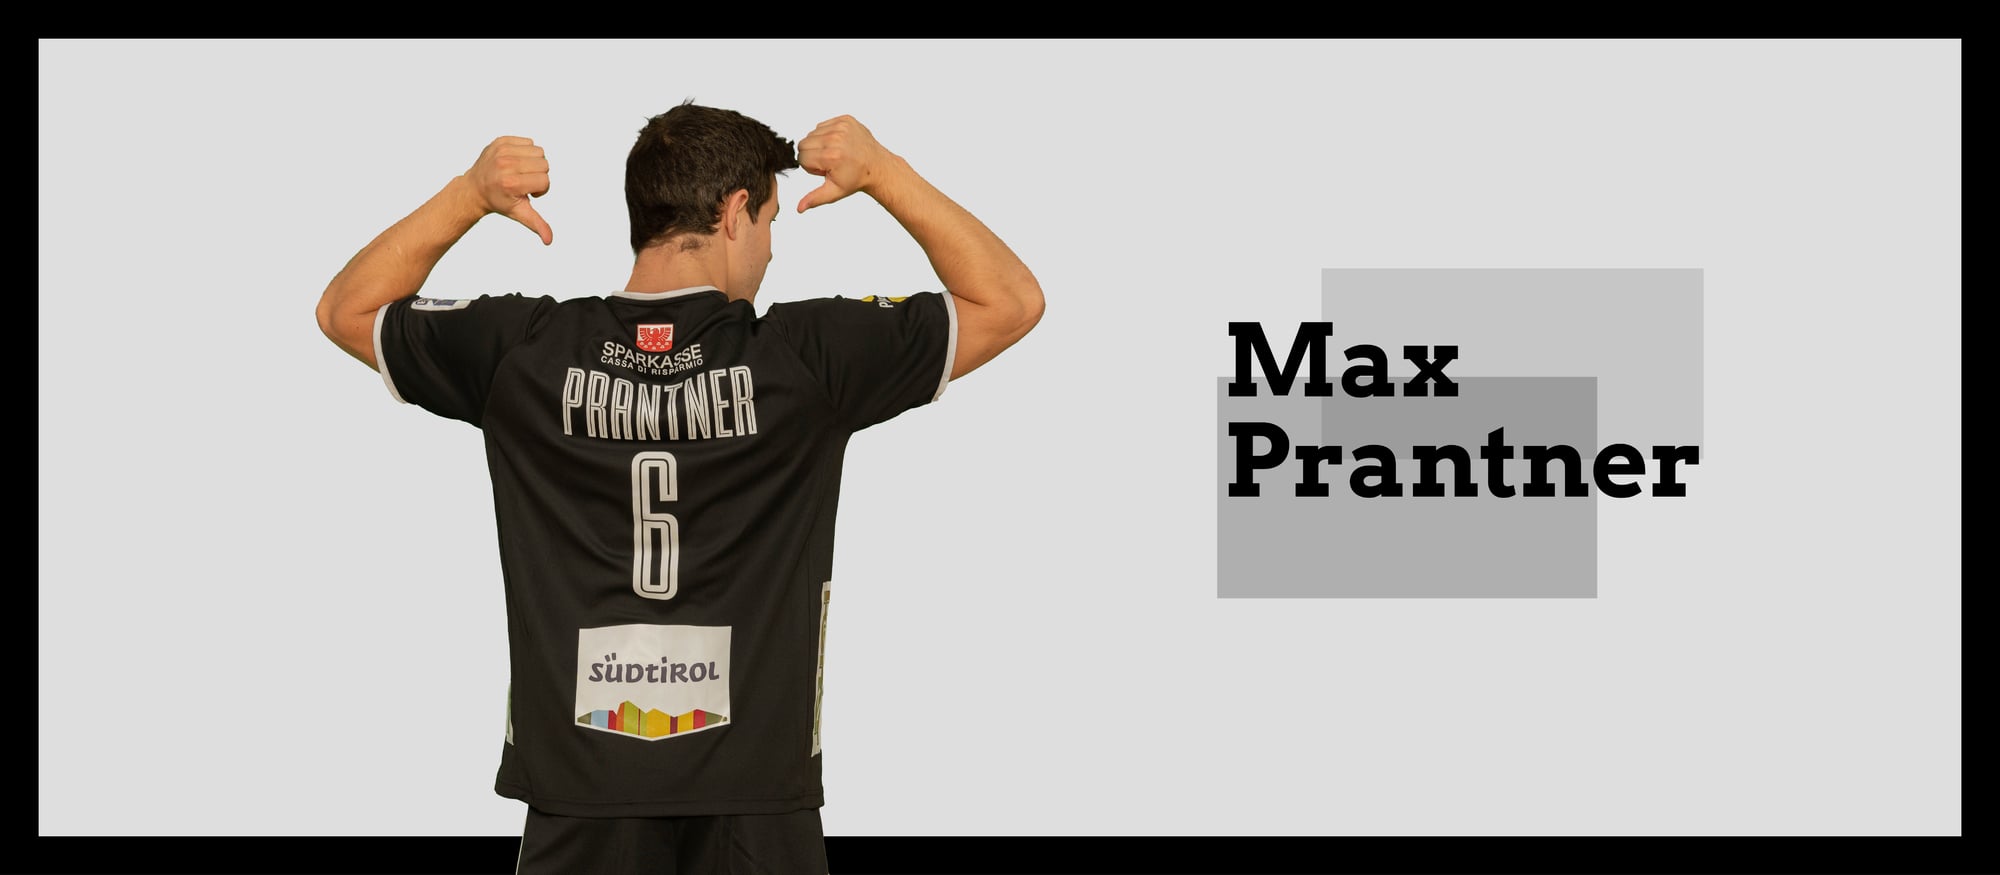 Prantner Max